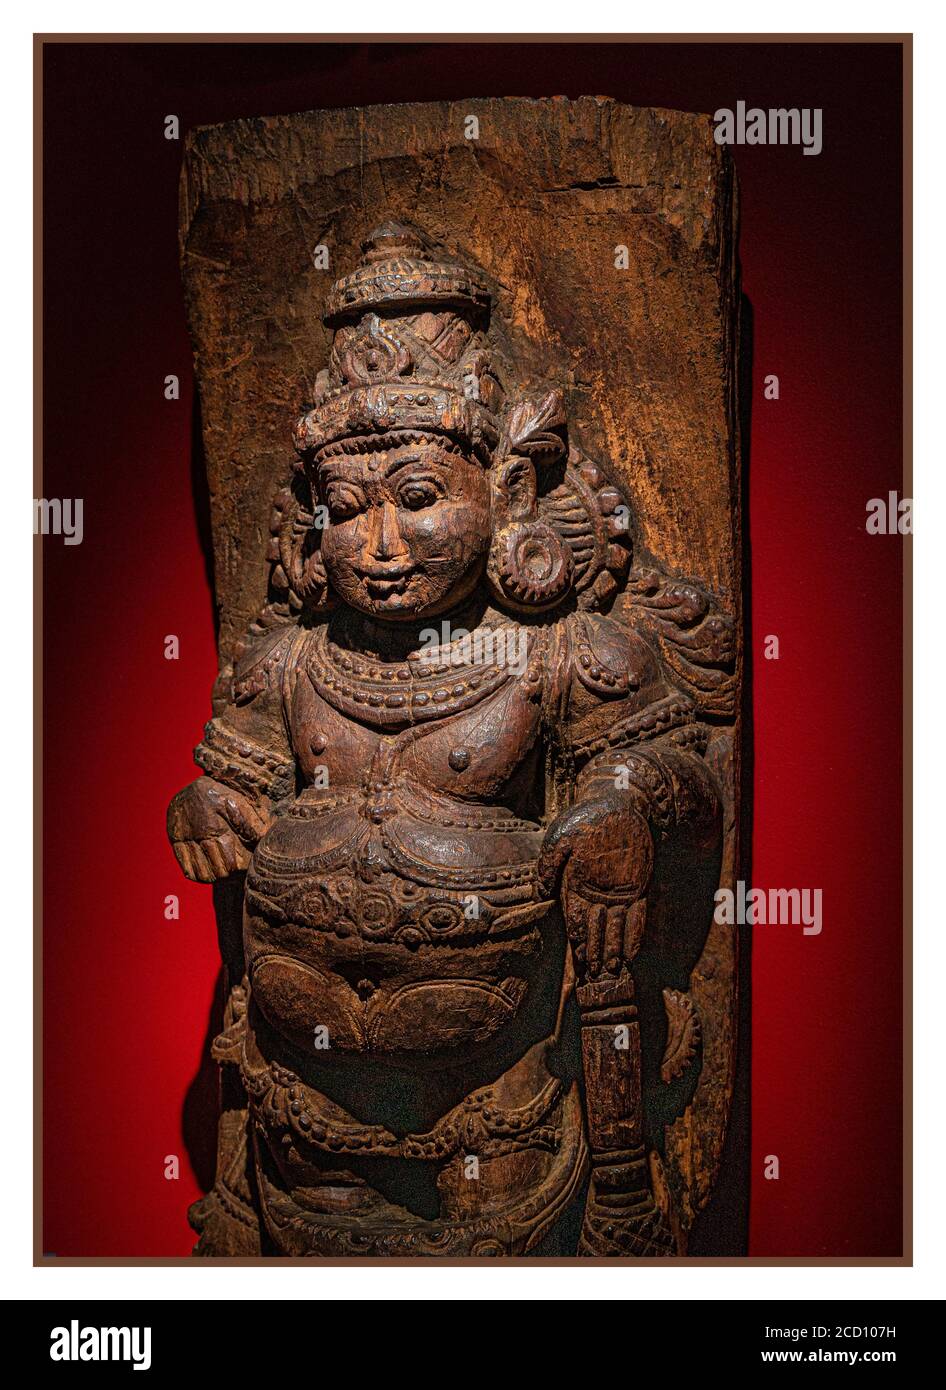 Hölzerne geschnitzte Statue geschnitzte Gottheit aus Südindien Sohn des Gottes Shiva. Auch genannt Kumara ein Fruchtbarkeitsgottheit Symbol, wo die Menschen beten, um Nachkommen zu haben. Stockfoto